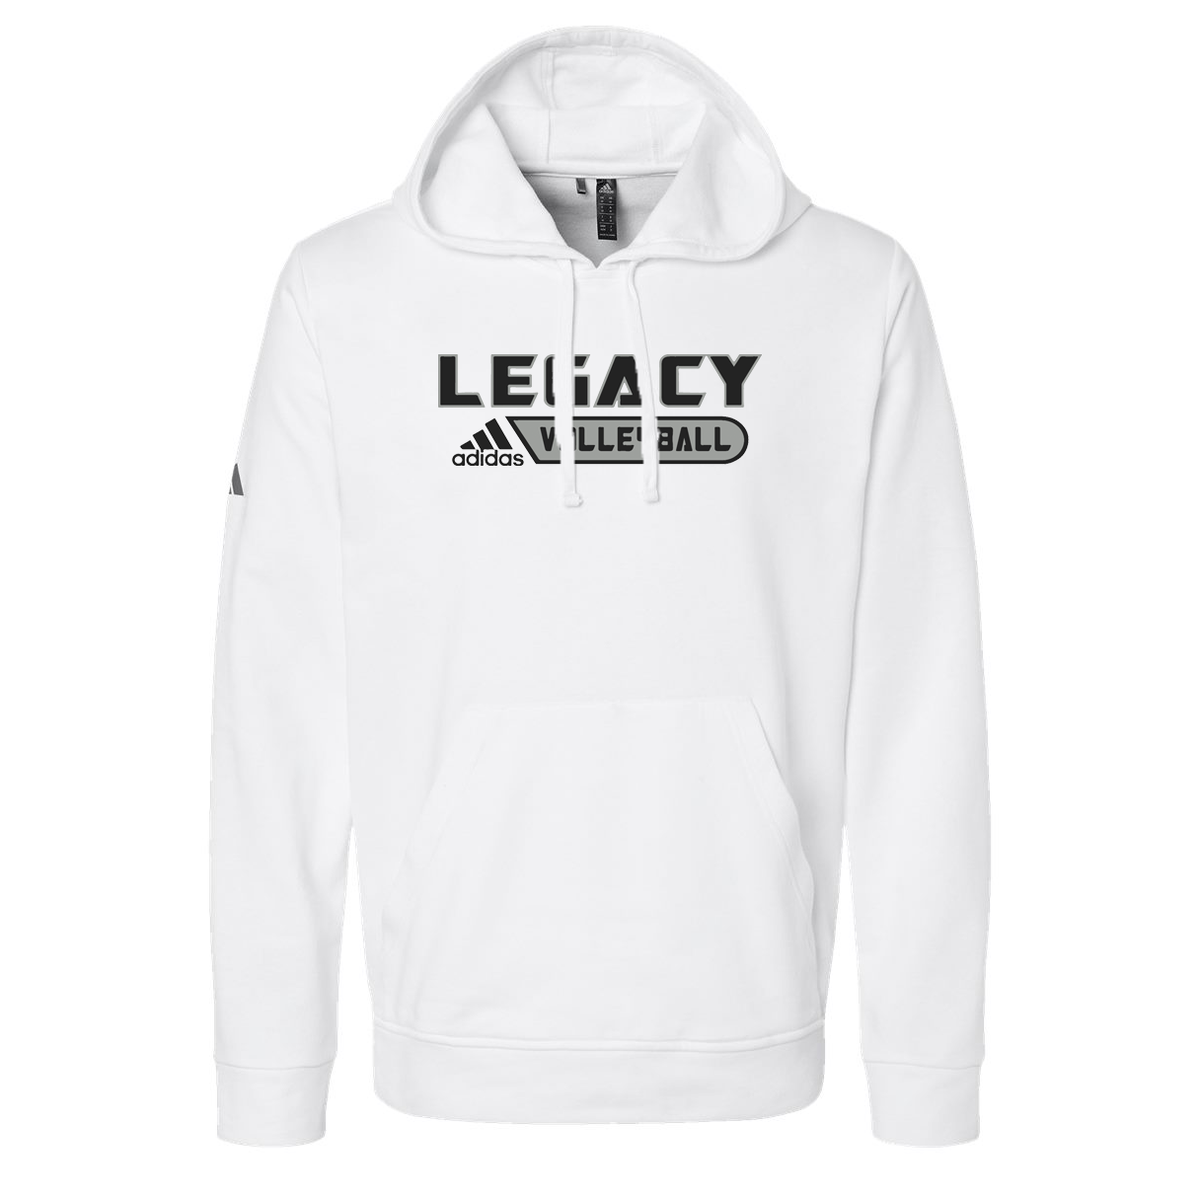 Legacy Volleyball Club Adidas Fleece Hooded Sweatshirt